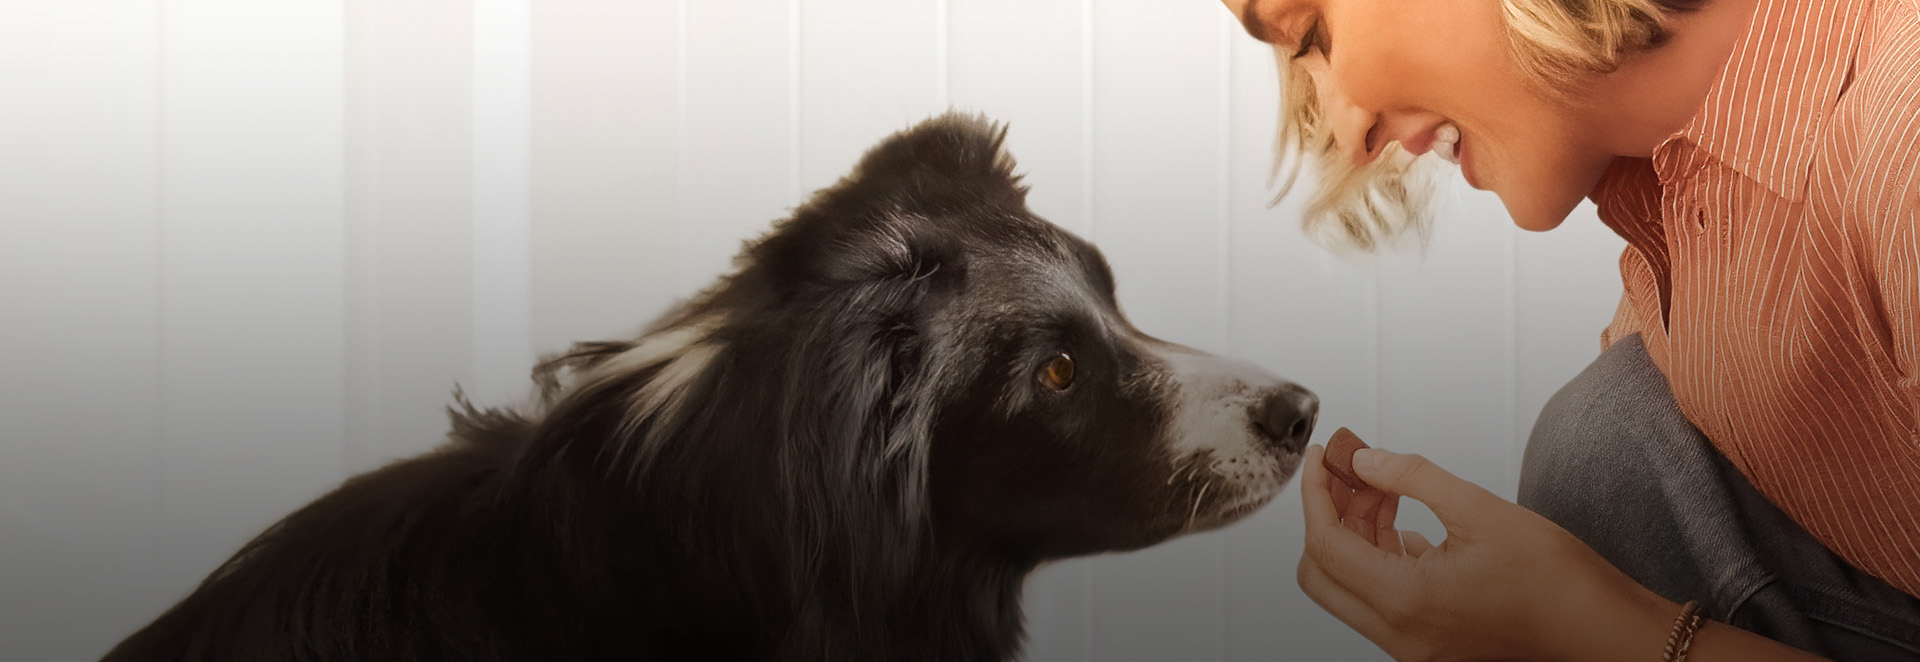 FRONTPRO Kautablette gegen Zecken und Flöhe wirkt bei Hunden effektiv.